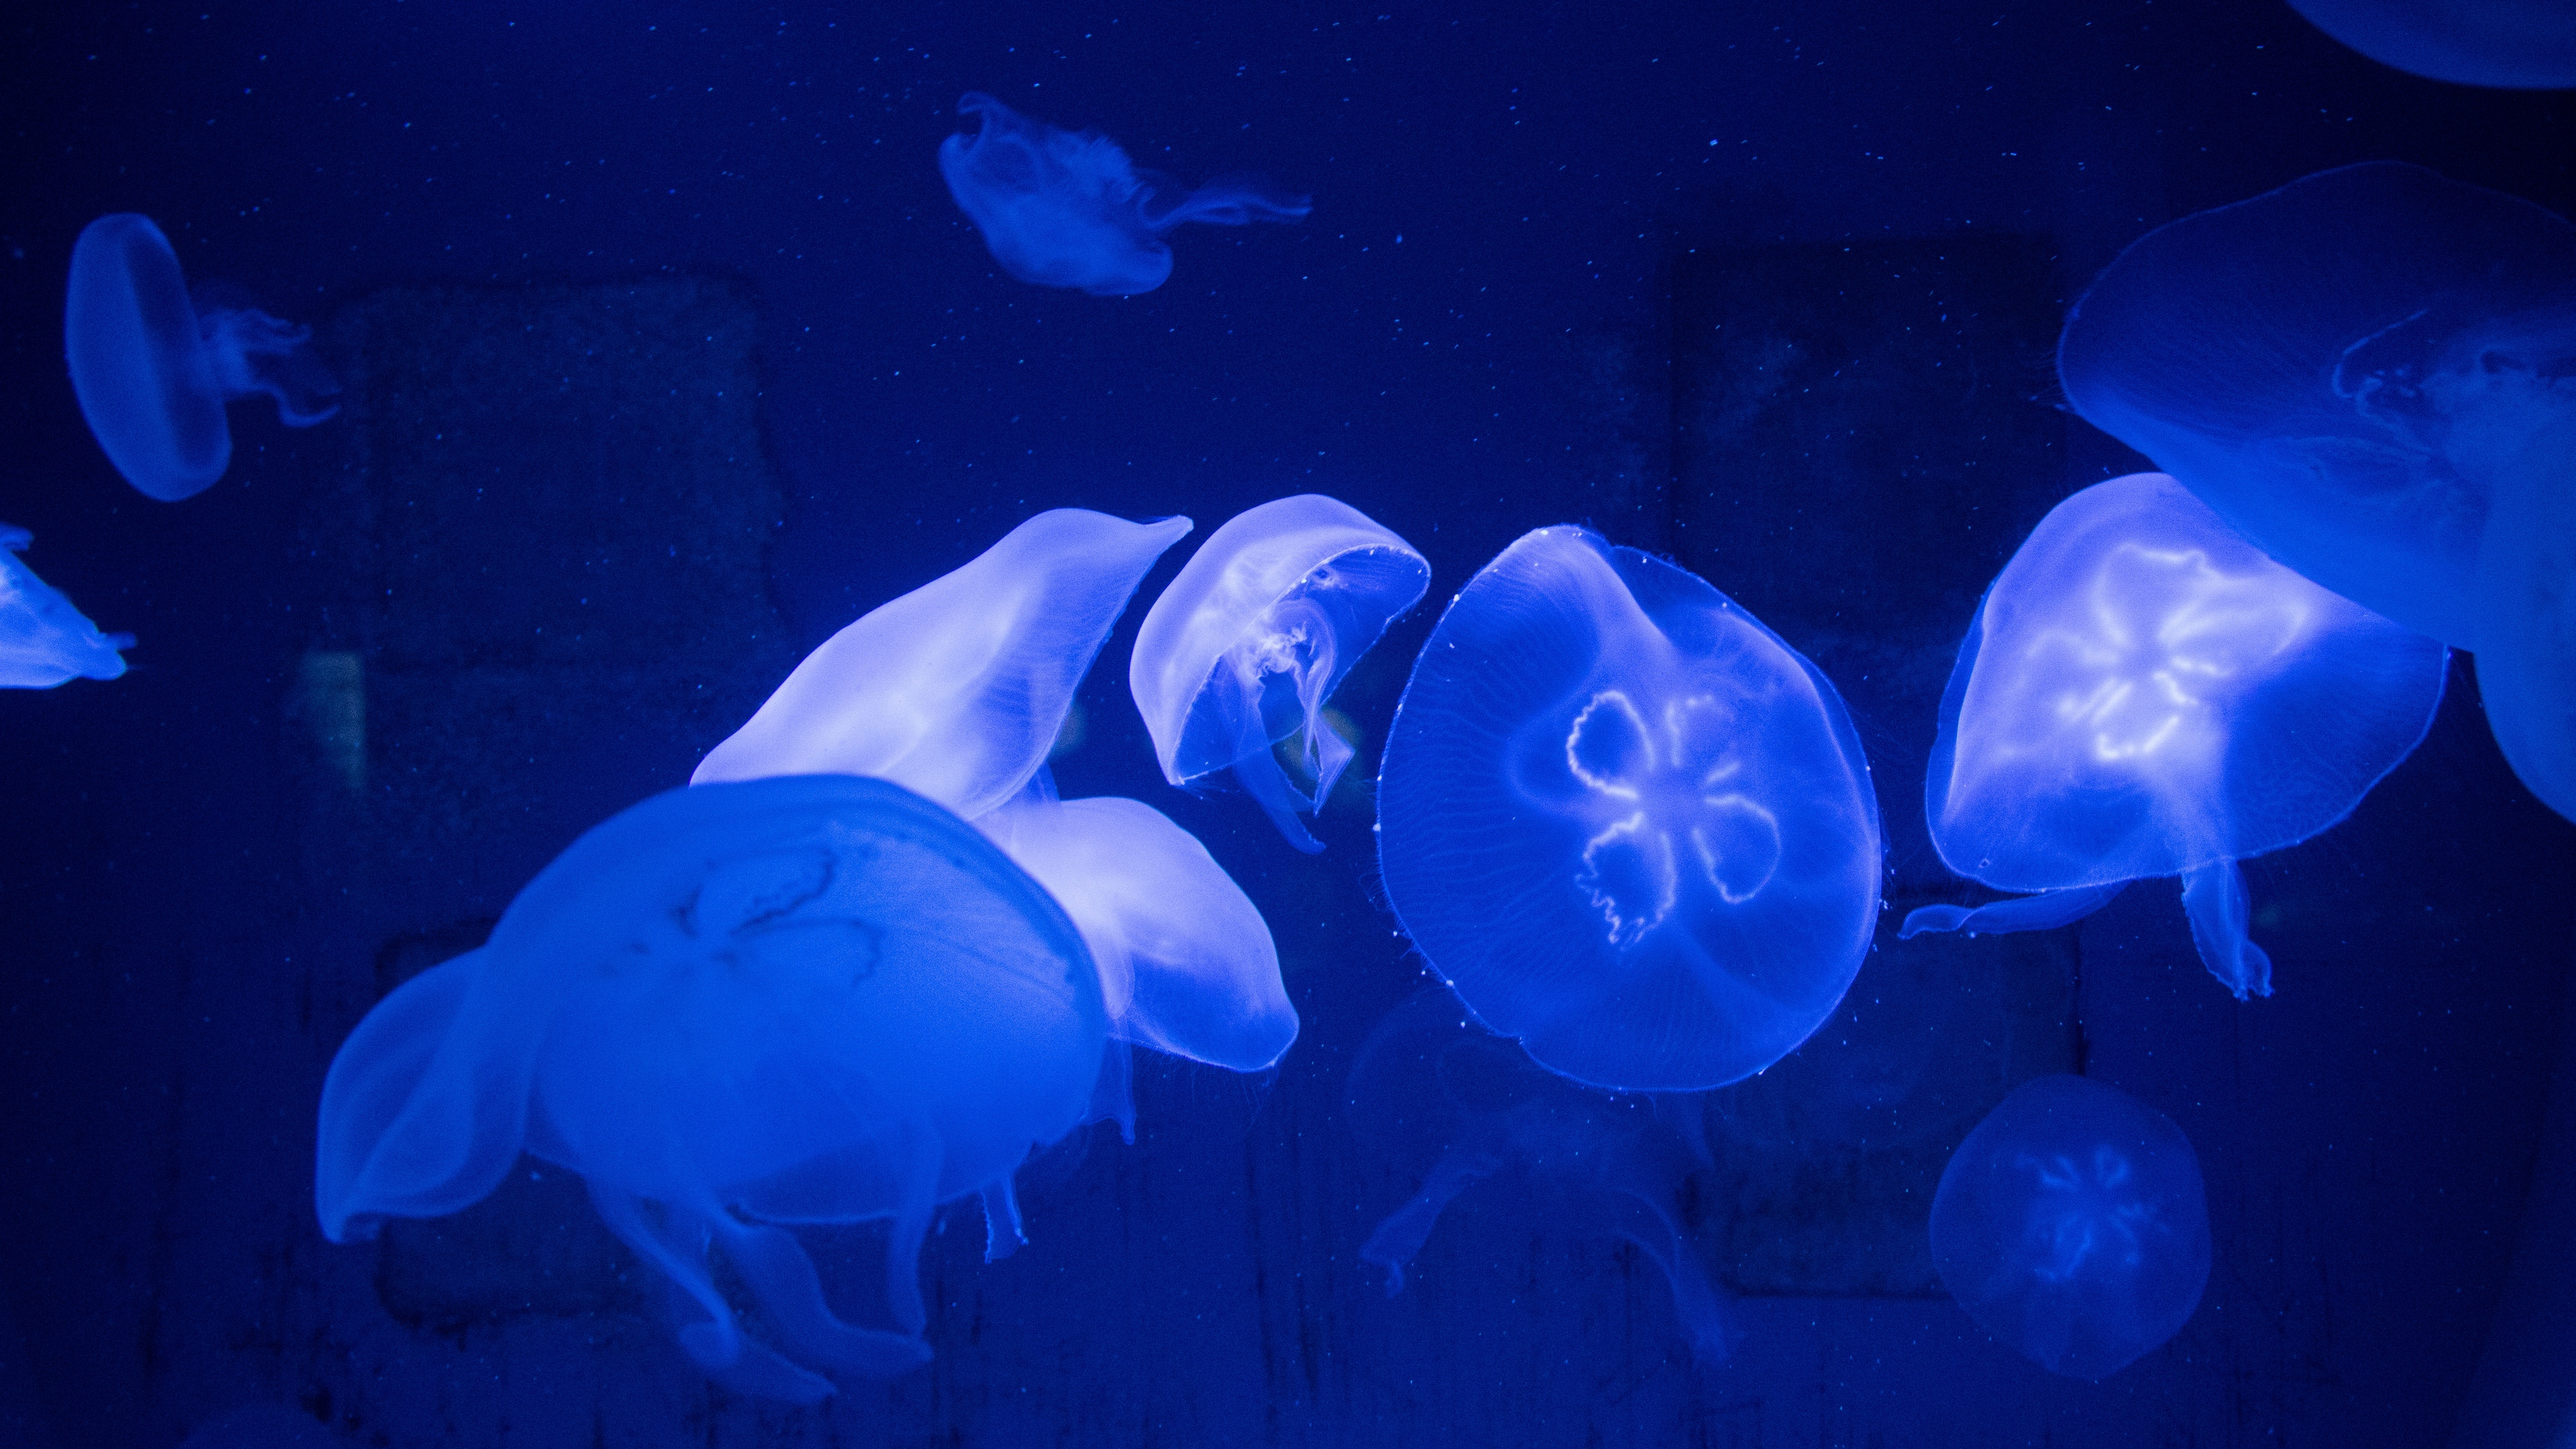 jellyfish underwater tentacles 4k 1541114764 - jellyfish, underwater, tentacles 4k - Underwater, tentacles, Jellyfish